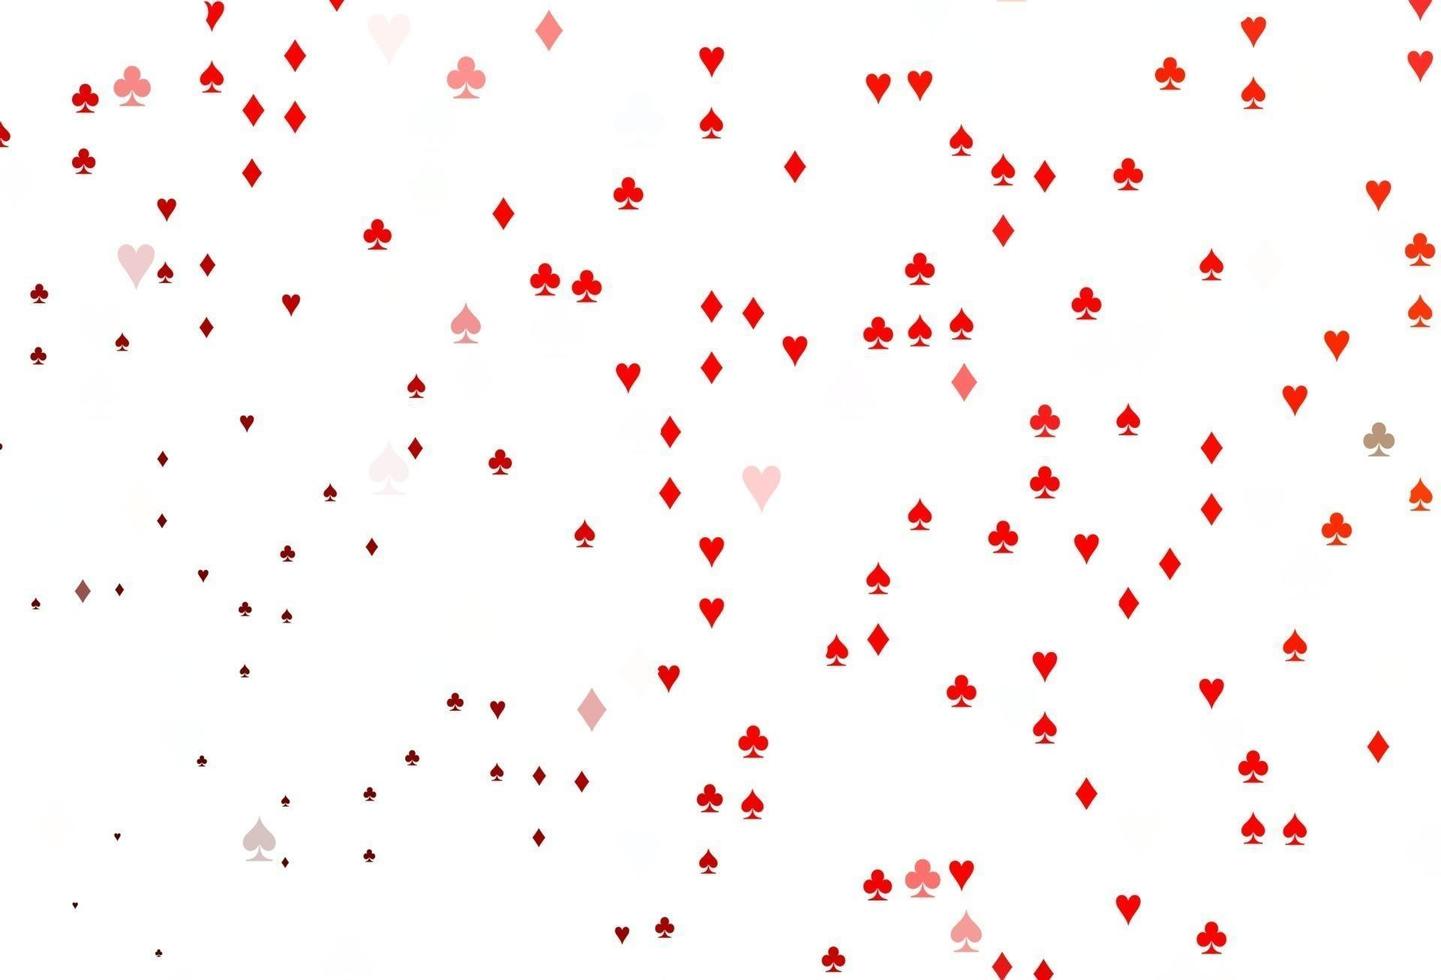 motif vectoriel rouge clair avec symbole de cartes.